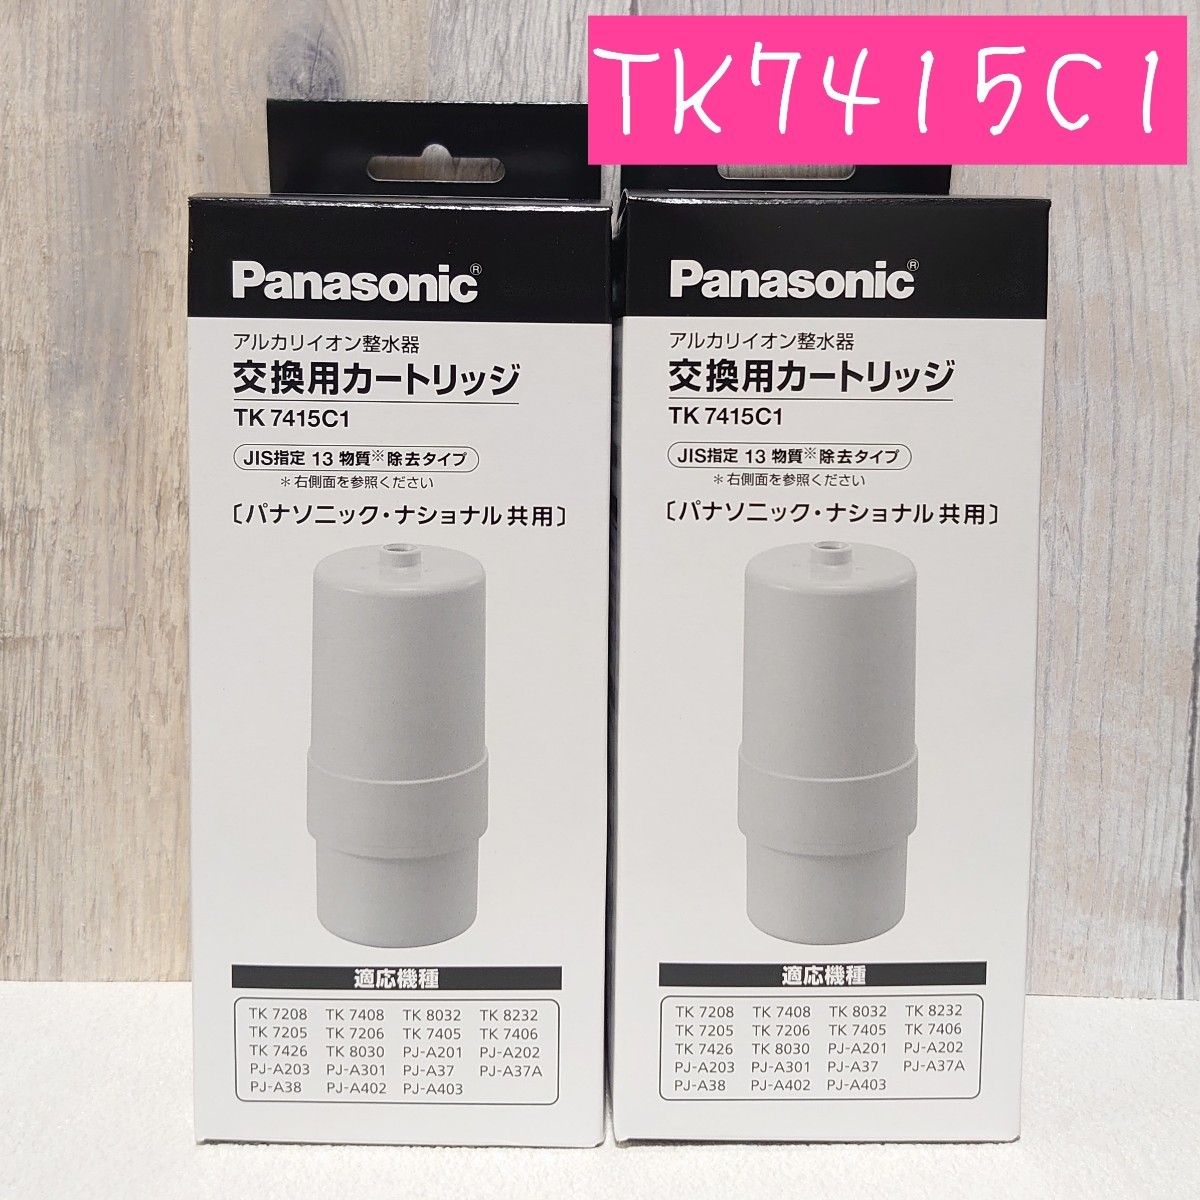 【6月購入】TK7415C1 Panasonic アルカリイオン整水器 カートリッジ×2個